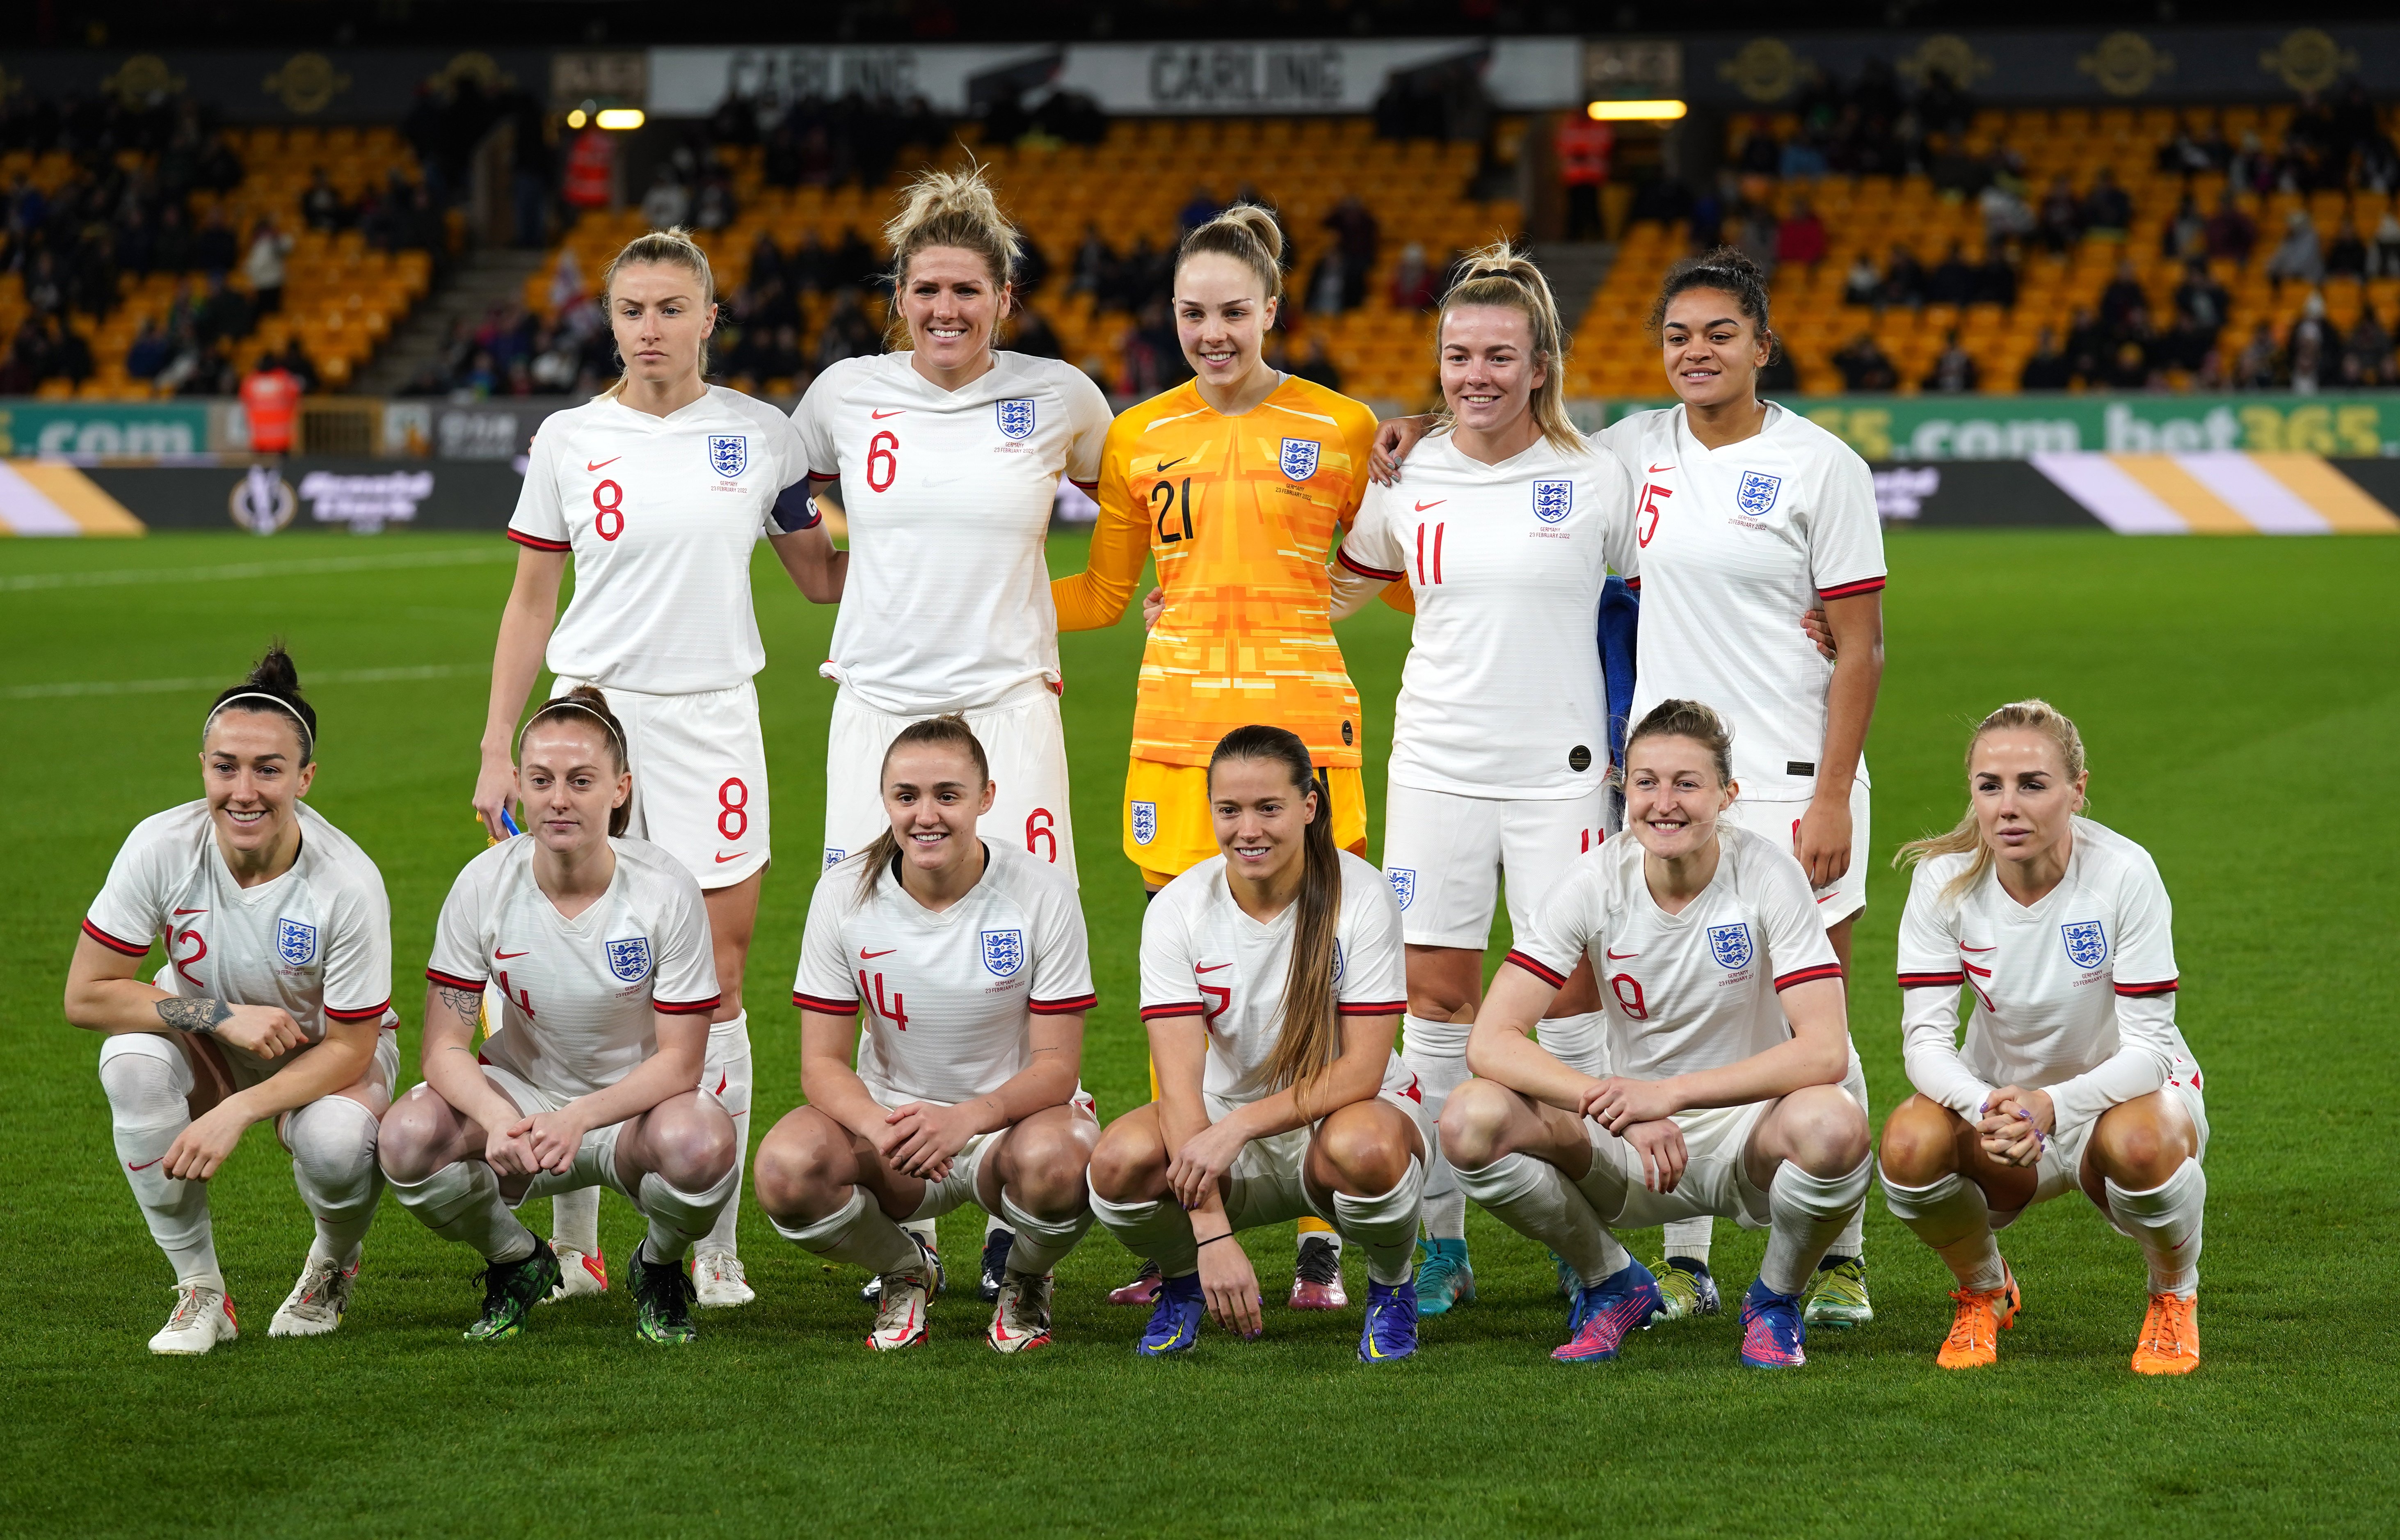 De Engelse vrouwen stellen zich op voor de vriendschappelijke wedstrijd van juni tegen België en Nederland voorafgaand aan het EK